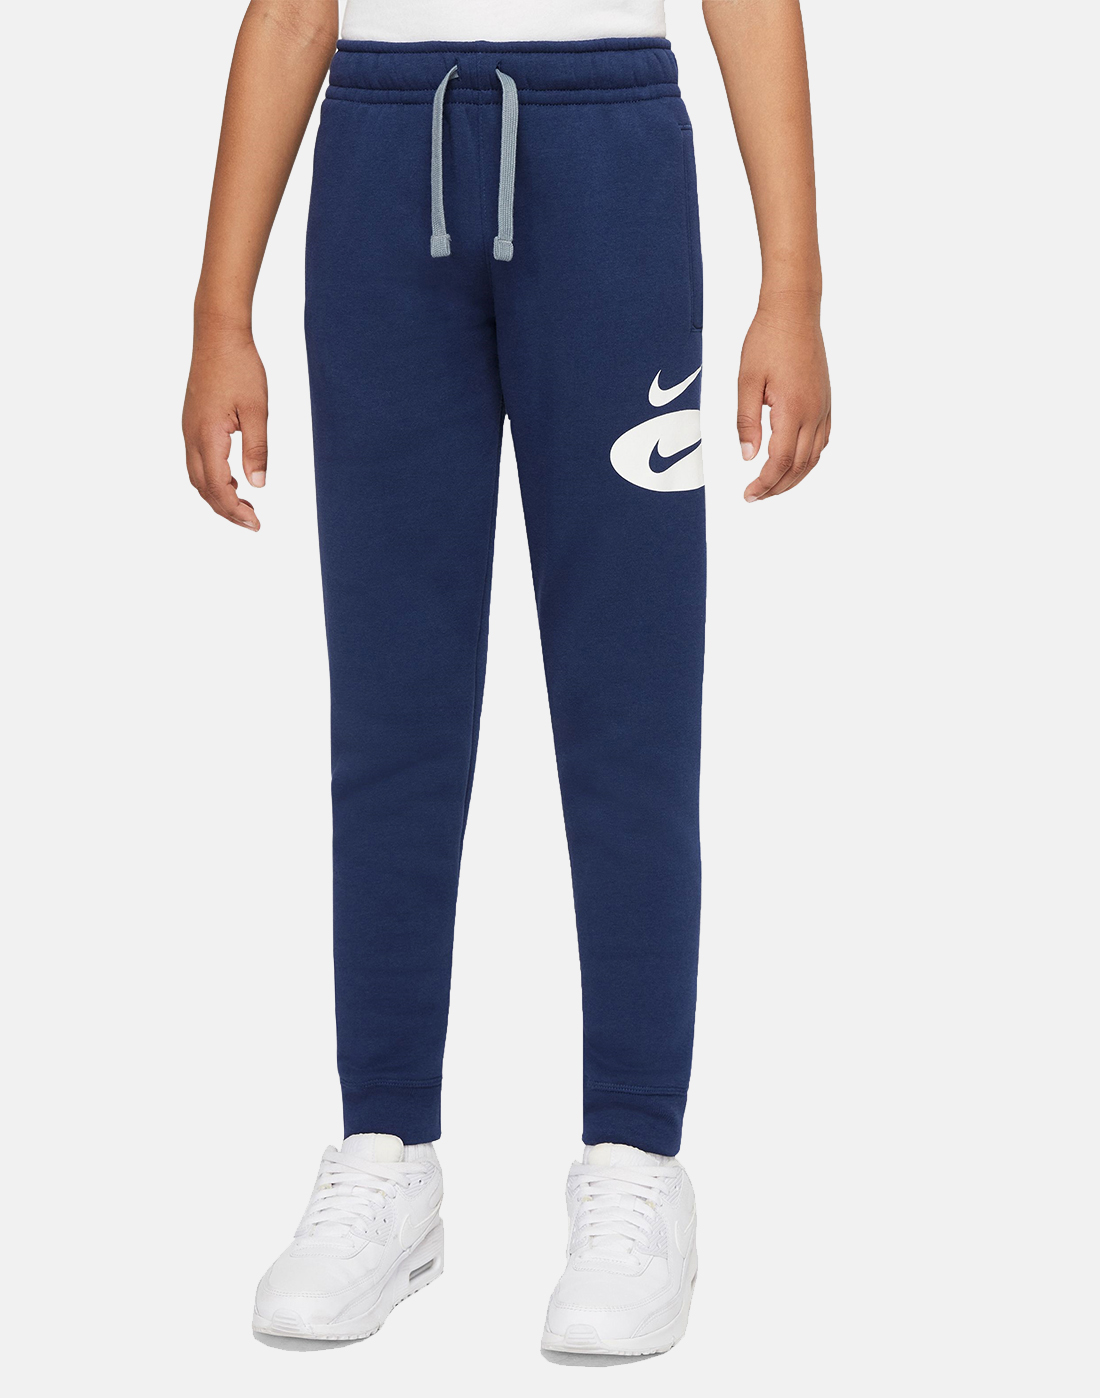 Nike Older Boys Logo Pants - Navy | Life Style Sports UK